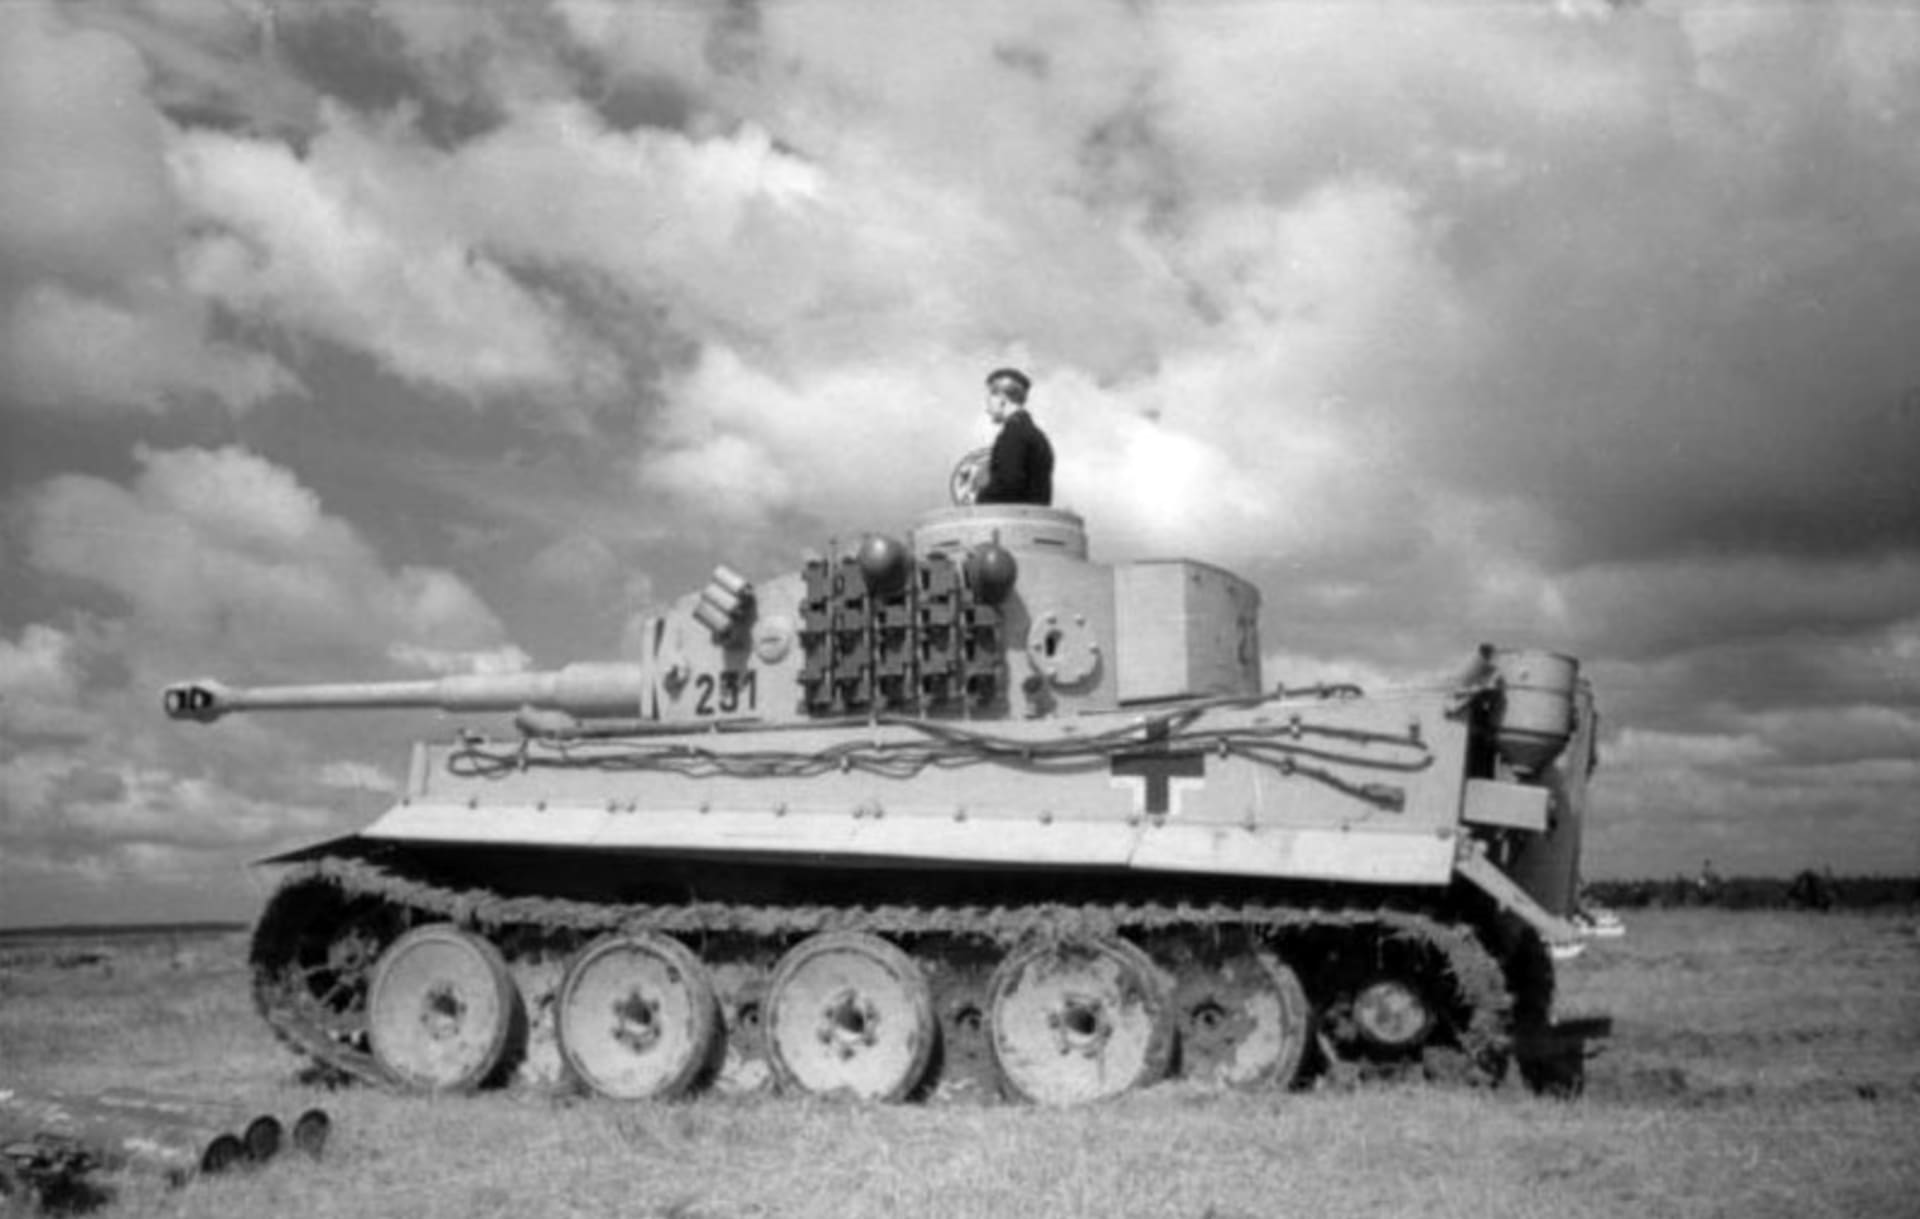 Tiger I na východní frontě